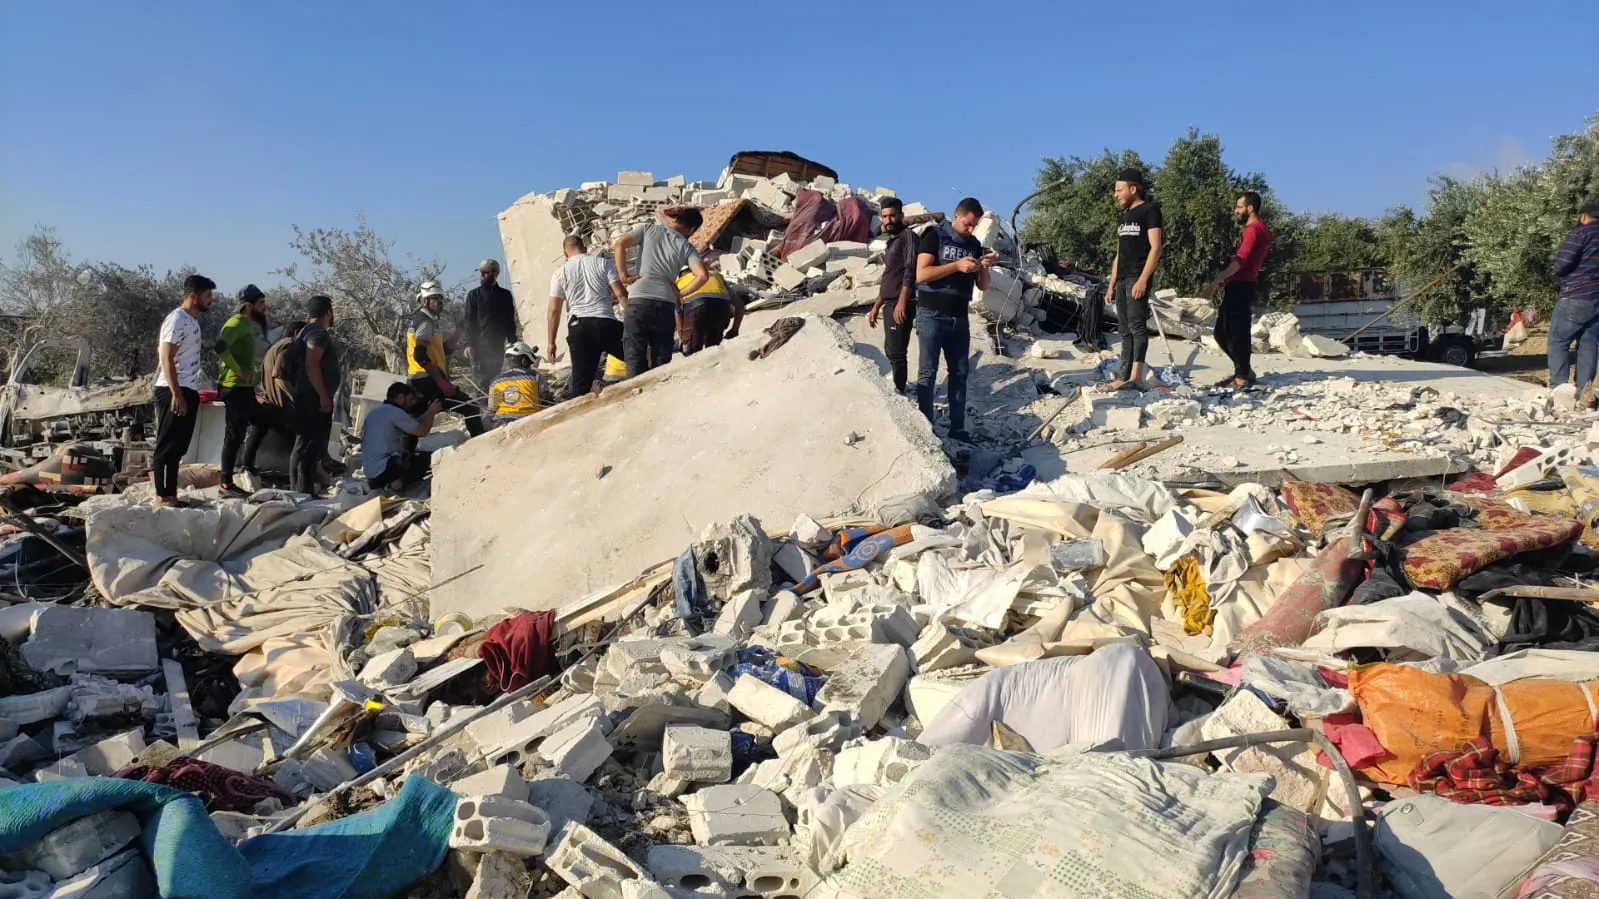 شهداء وجرحى مدنيون بقصف جوي روسي طال قرية الجديدة "المسيحية" بريف إدلب